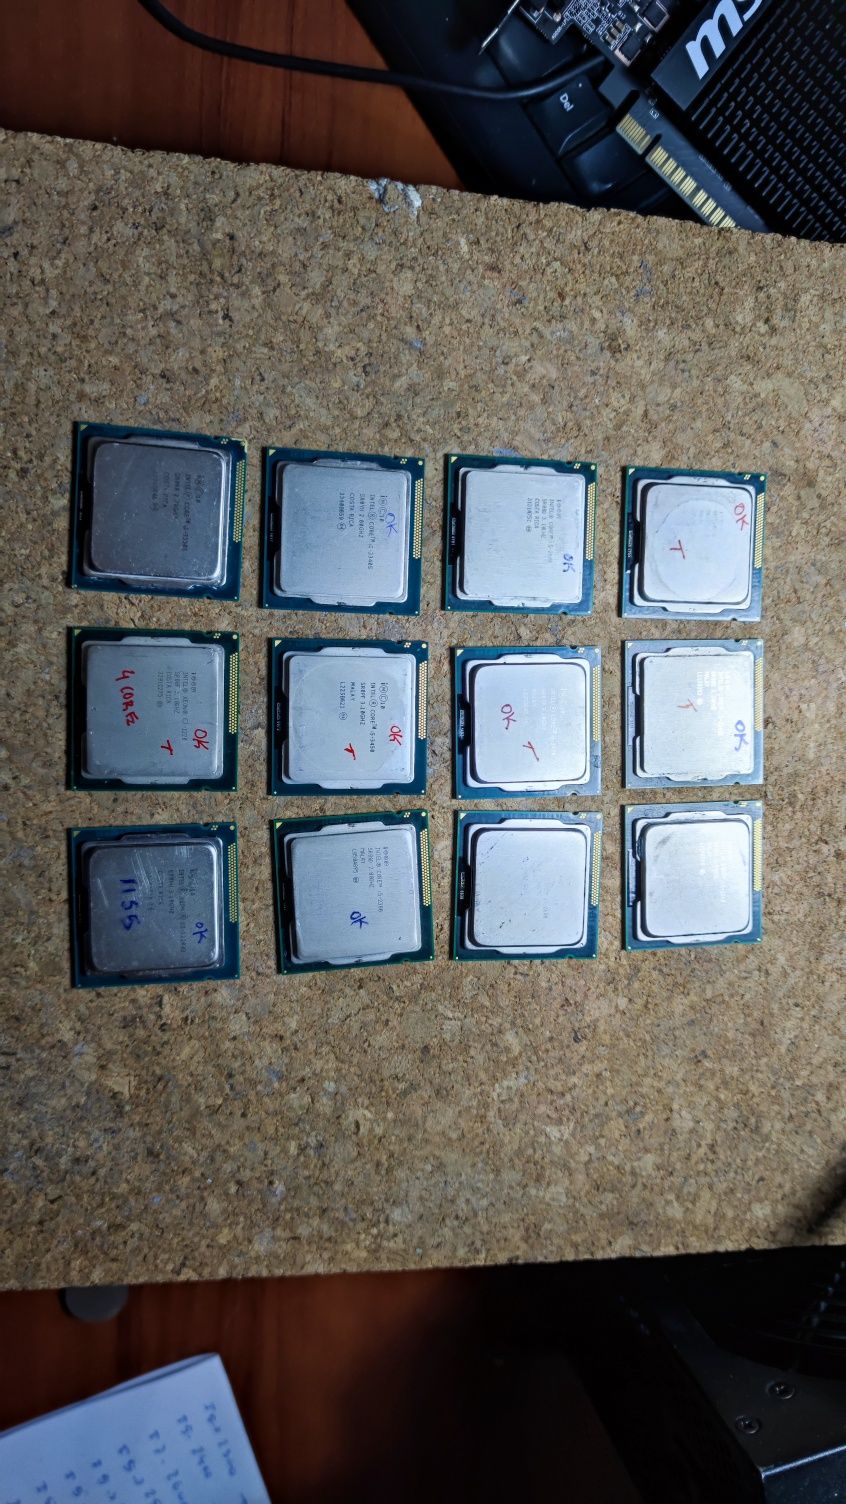 Processadores i7 i5 Xeon (Socket/ LGA 1155) tudo 4 Core.